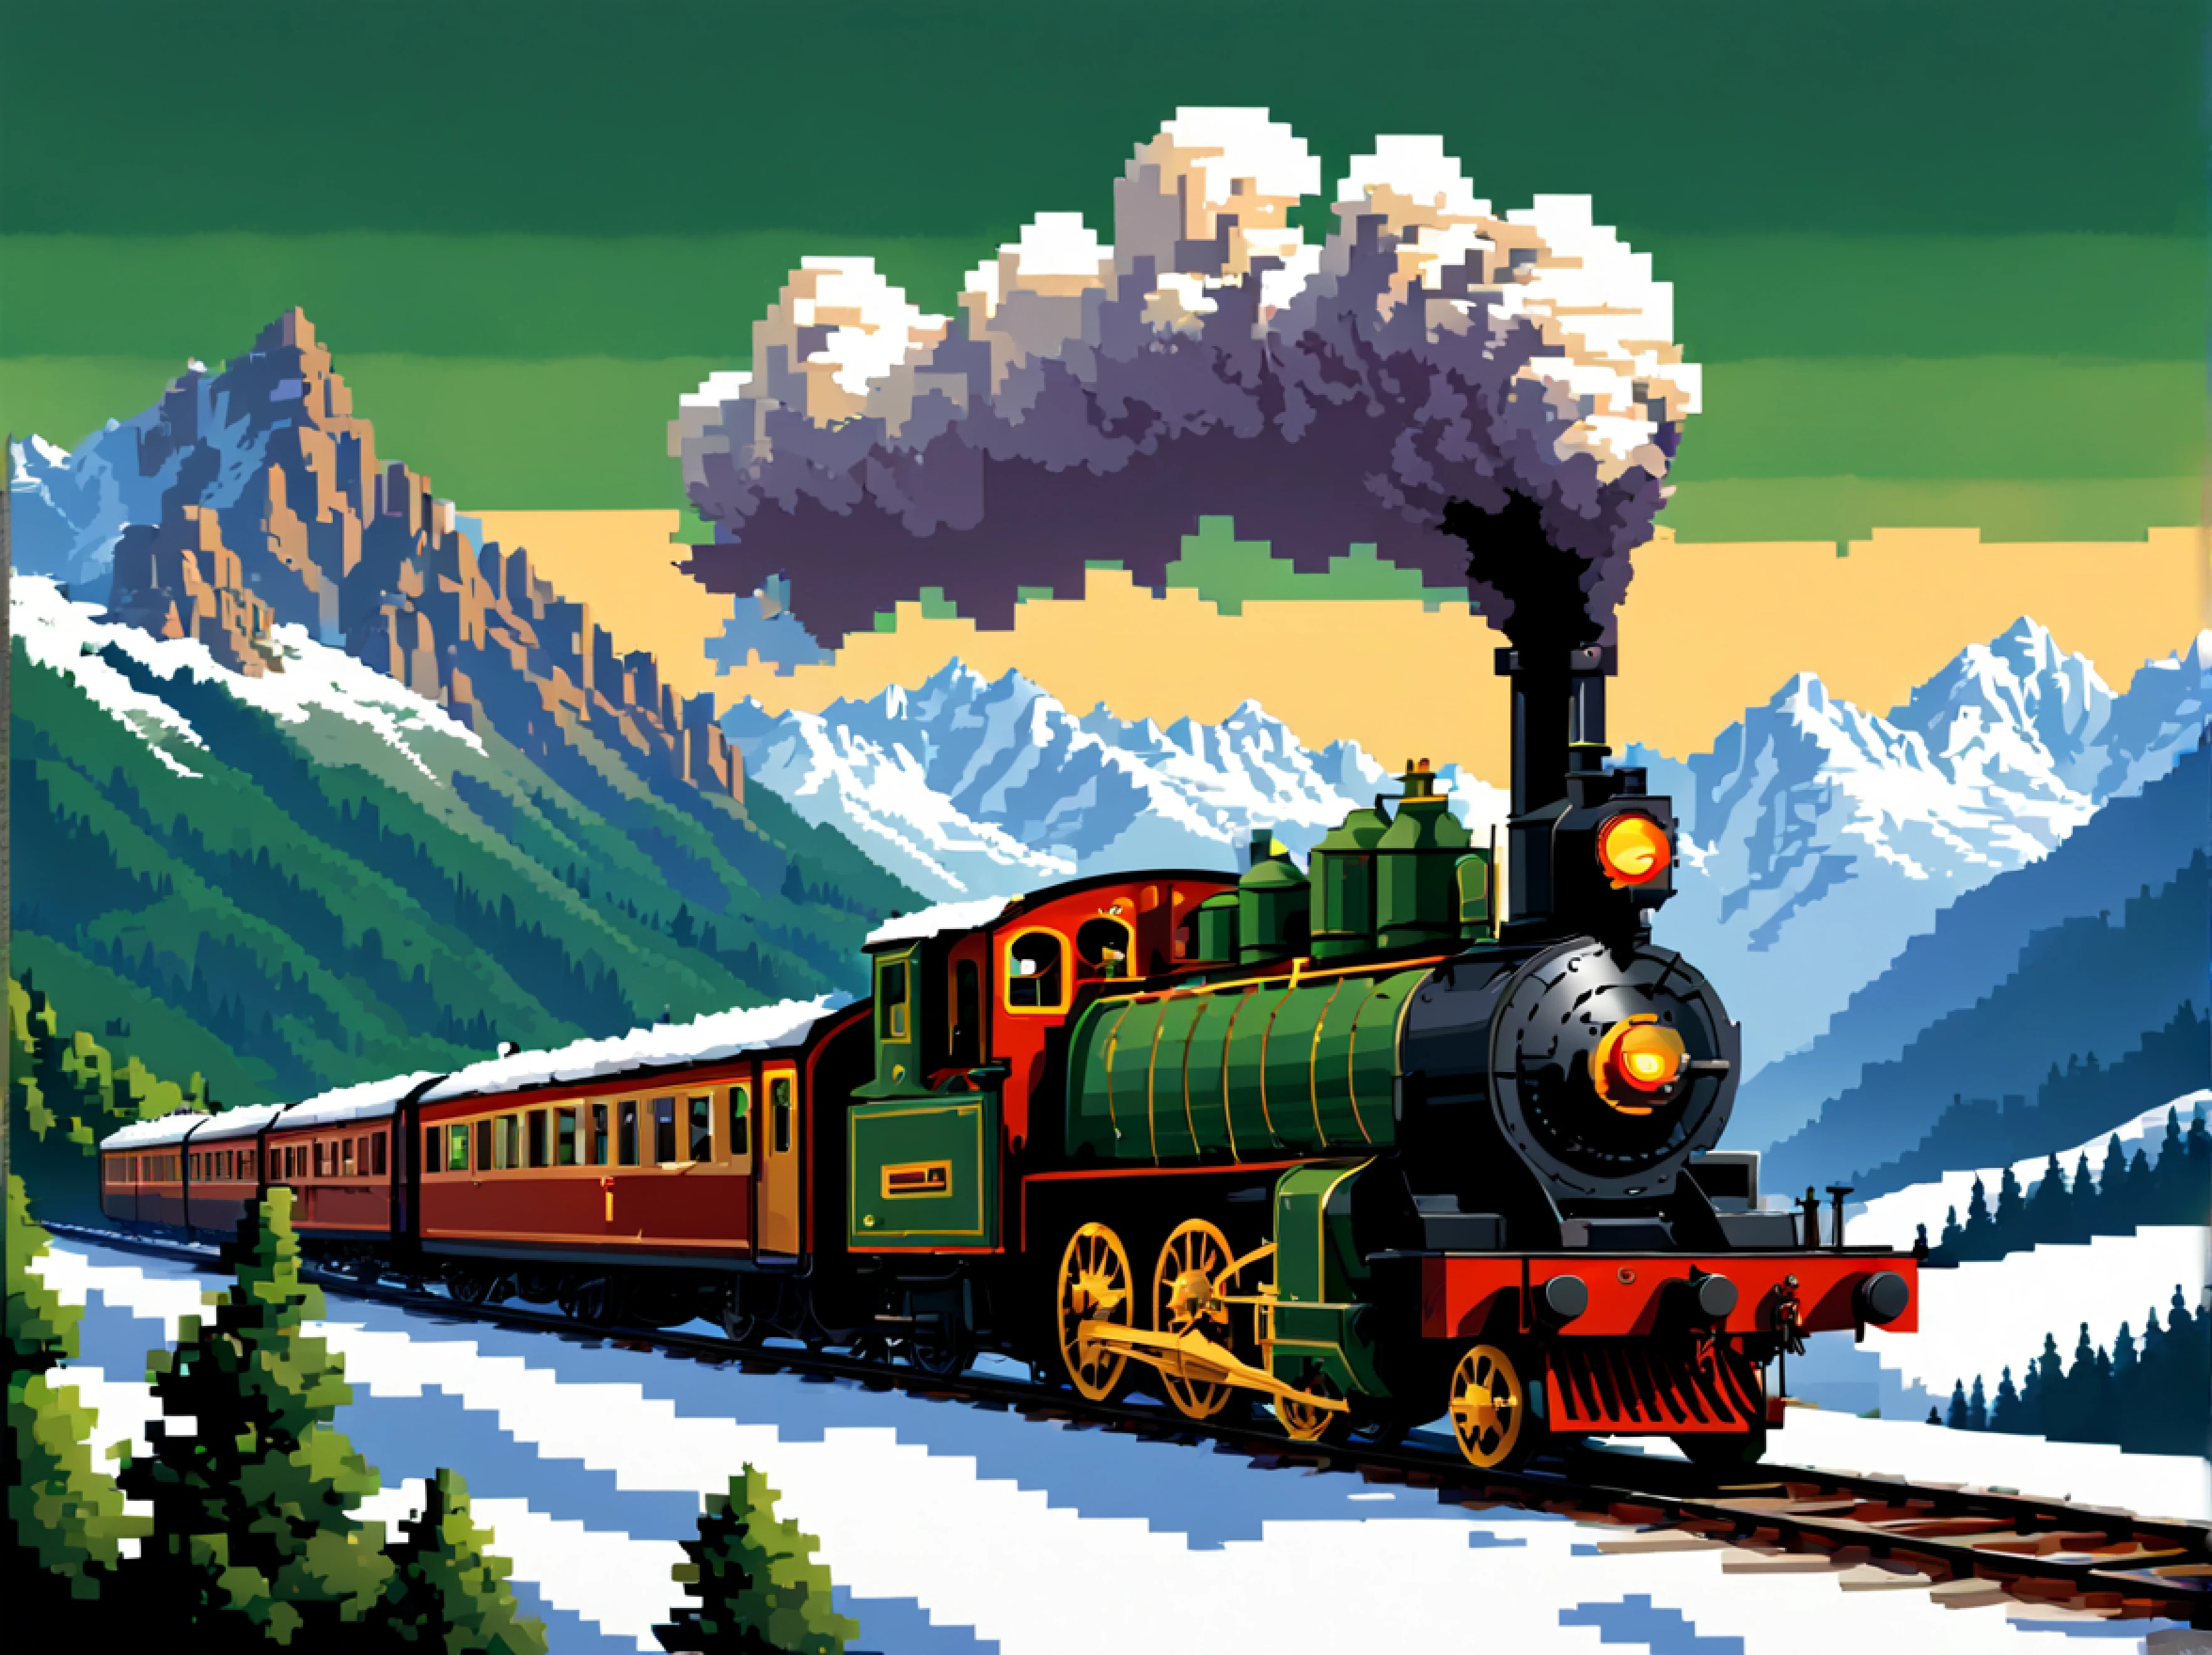 (像素艺术:1.3), (侧面图:1.3), 20 世纪初，老式蒸汽机车优雅地穿越阿尔卑斯山风景如画的风景, 展示列车细长的车身，装饰有复杂的细节, 车轮在蜿蜒的轨道上加速，有节奏地旋转, 让雄伟的阿尔卑斯山隐约可见, 白雪皑皑的山峰和郁郁葱葱的绿色山谷与蒸汽火车这一机械奇迹形成了鲜明的对比, 体现了那个时代的怀旧和冒险精神, 太阳的金色光芒在抛光的金属表面上舞动, 为这个永恒的场景注入活力, 捕捉过去时代的精髓